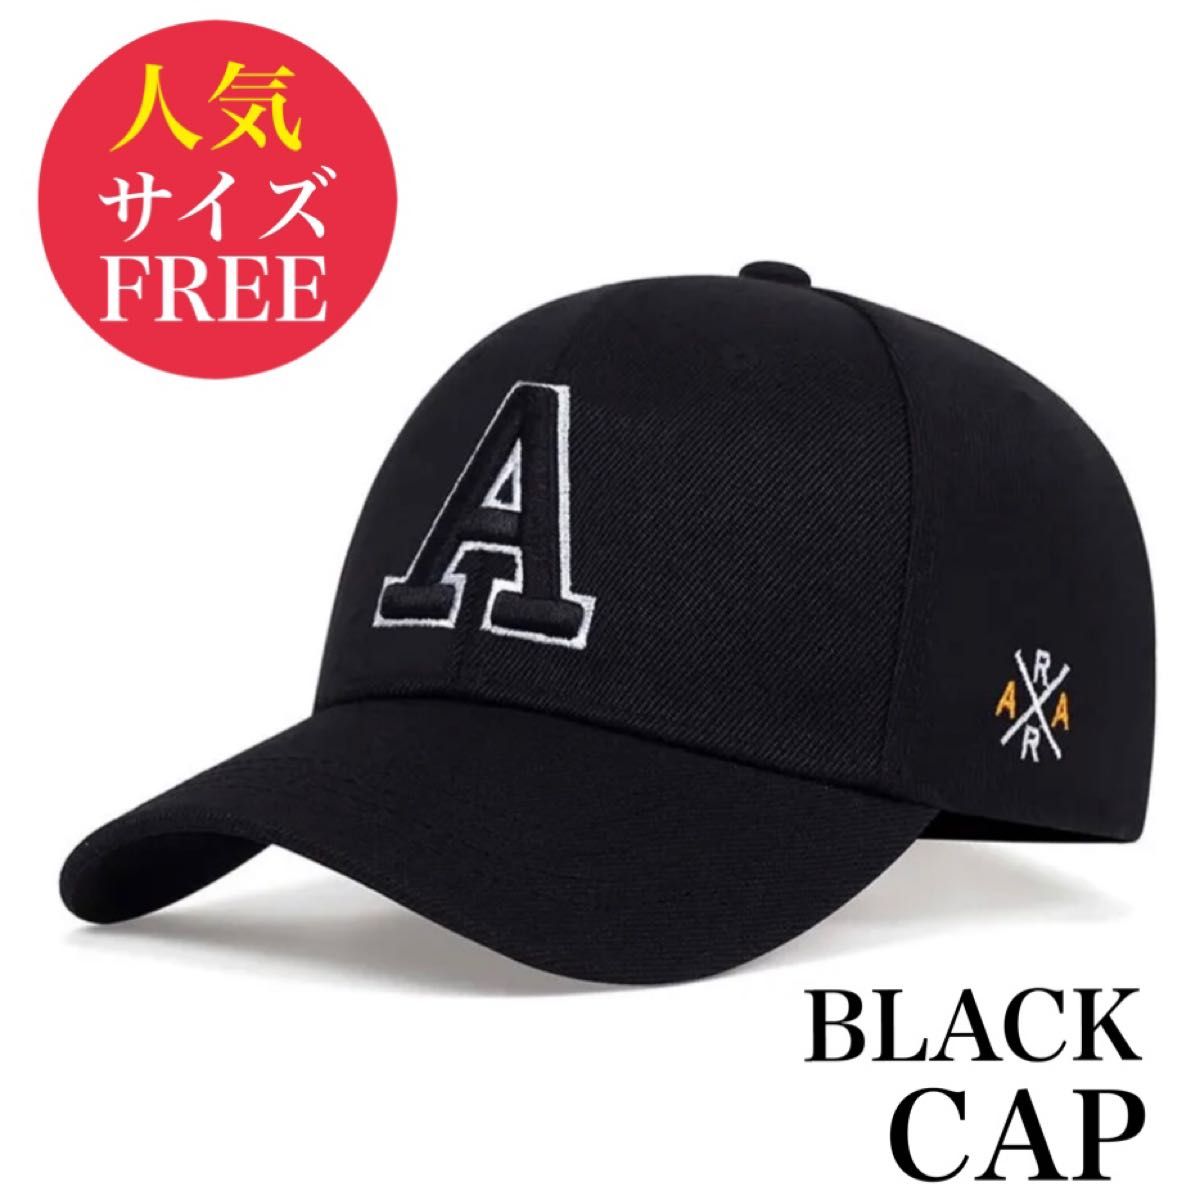 新品 ベースボールキャップ メンズ ブラック 黒色 帽子 野球帽 大きい ロゴ